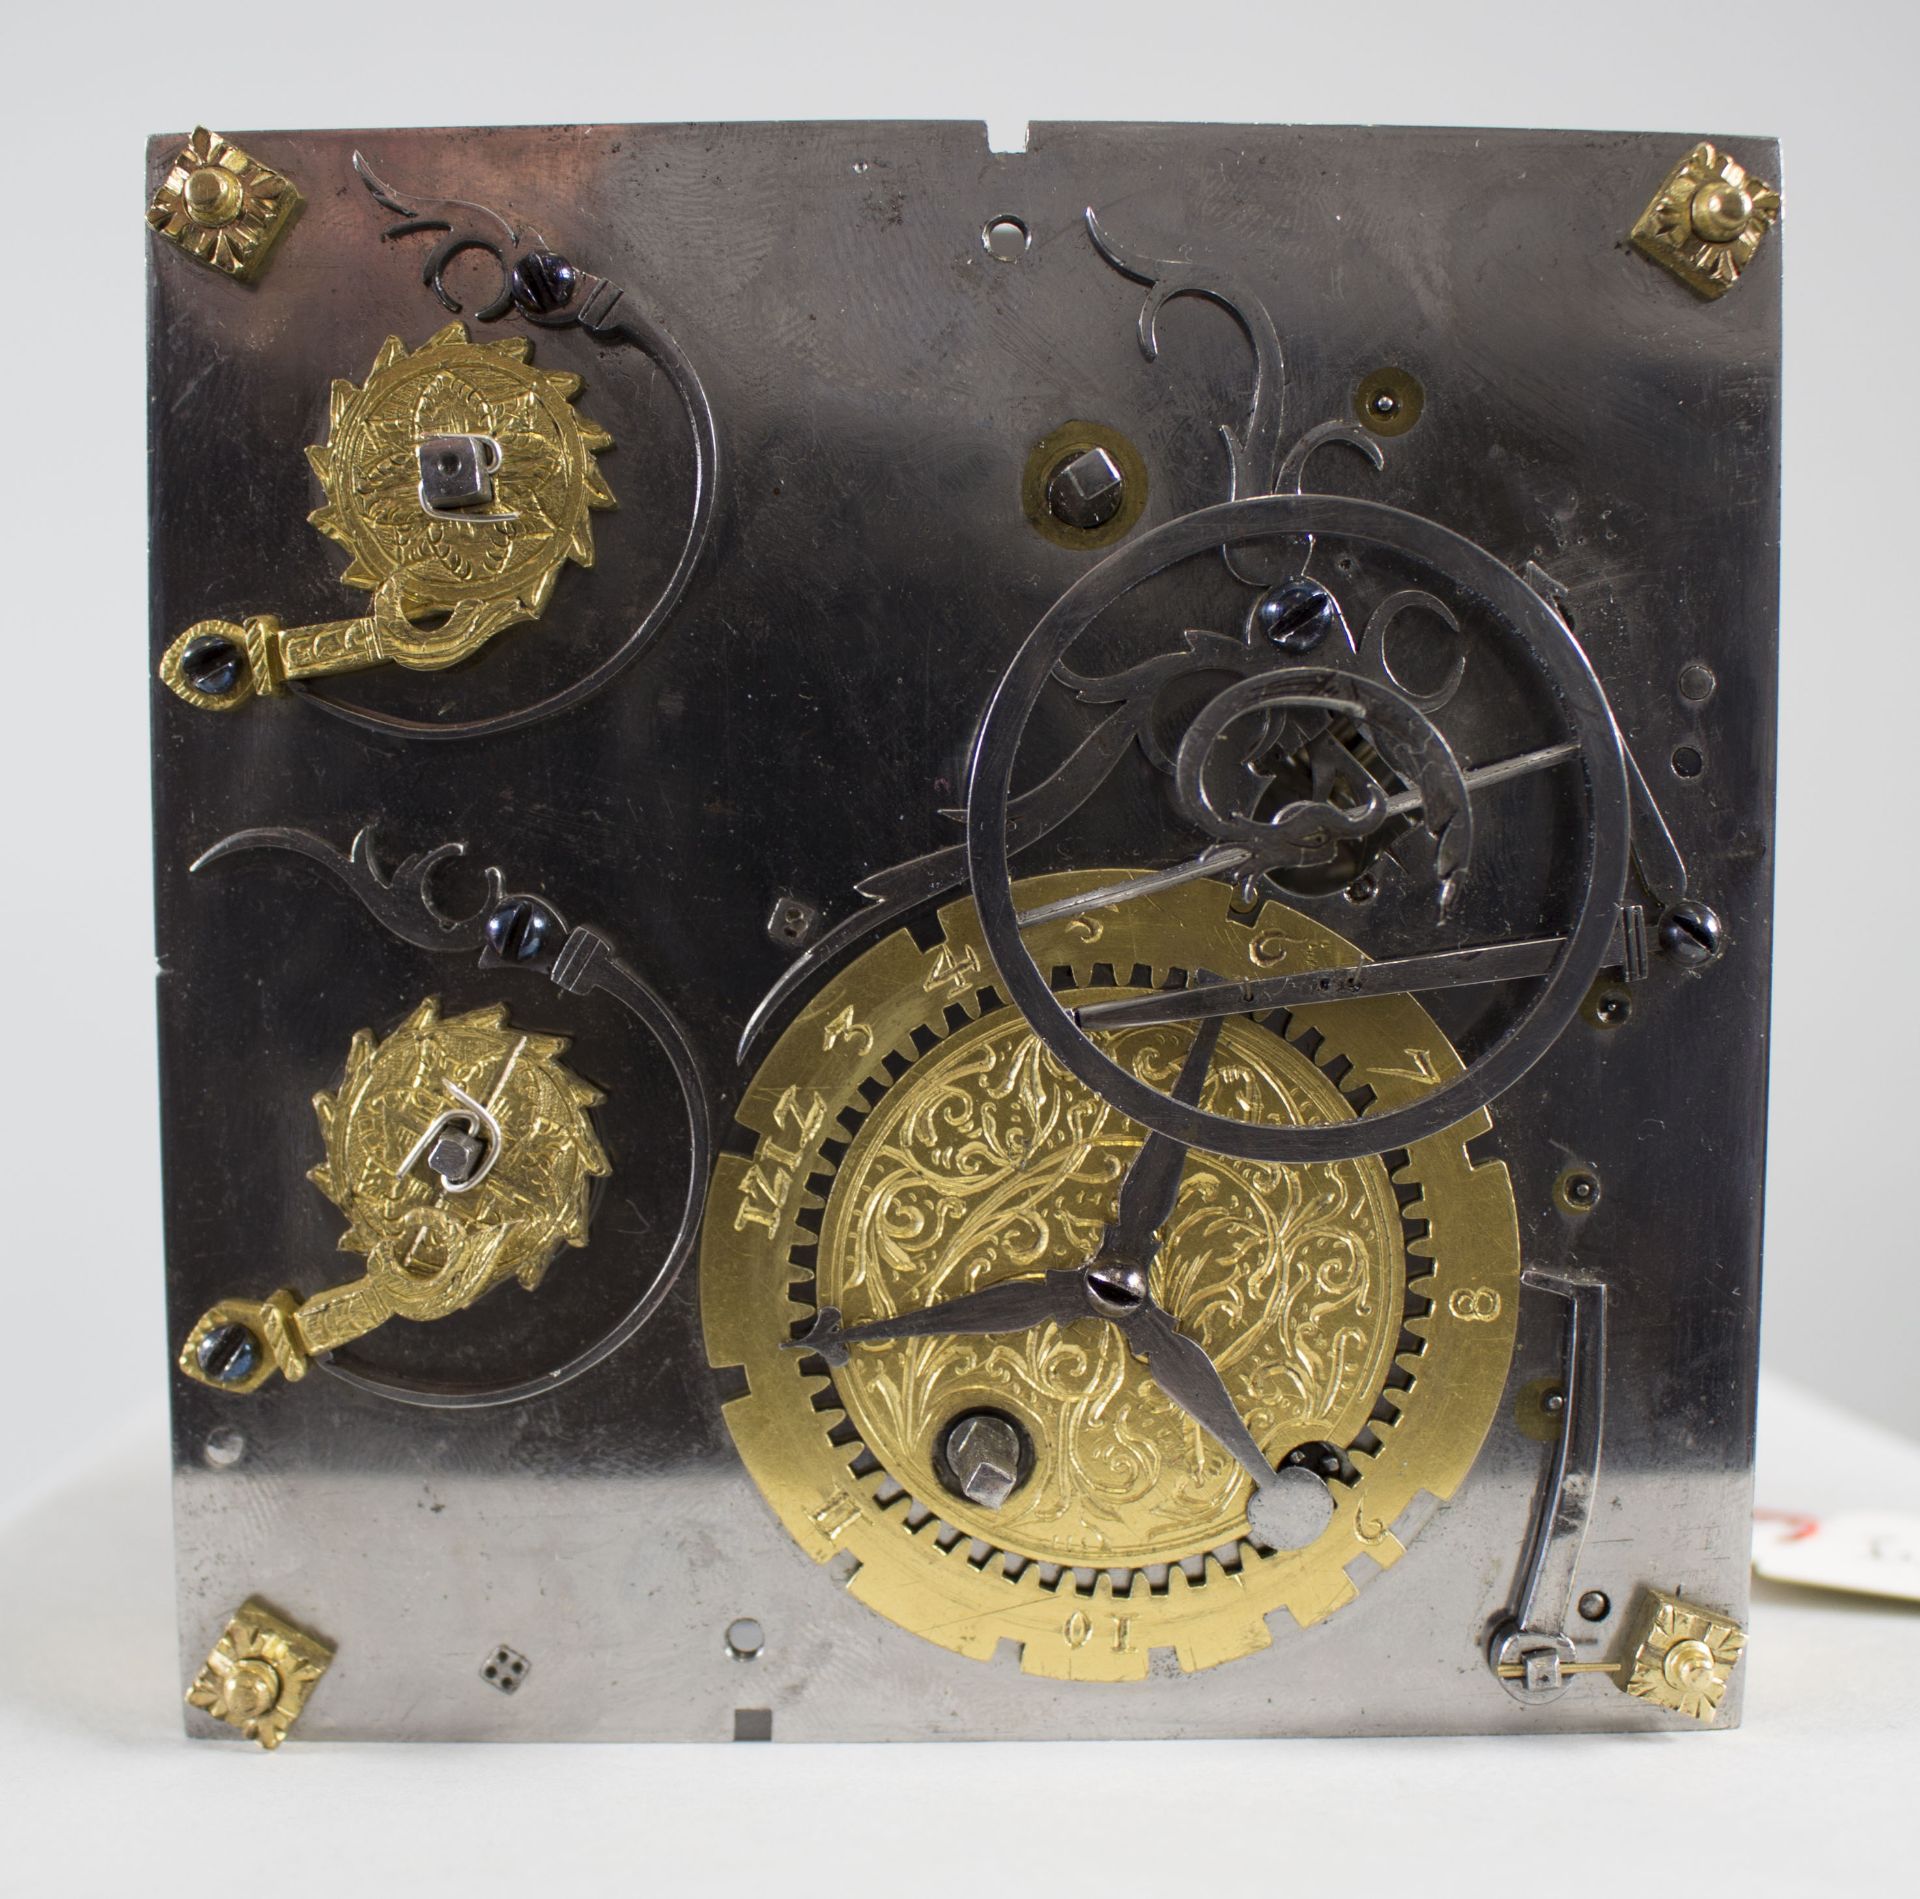 Tischuhr / A table clock, süddeutsch, um 1620 - Image 11 of 15